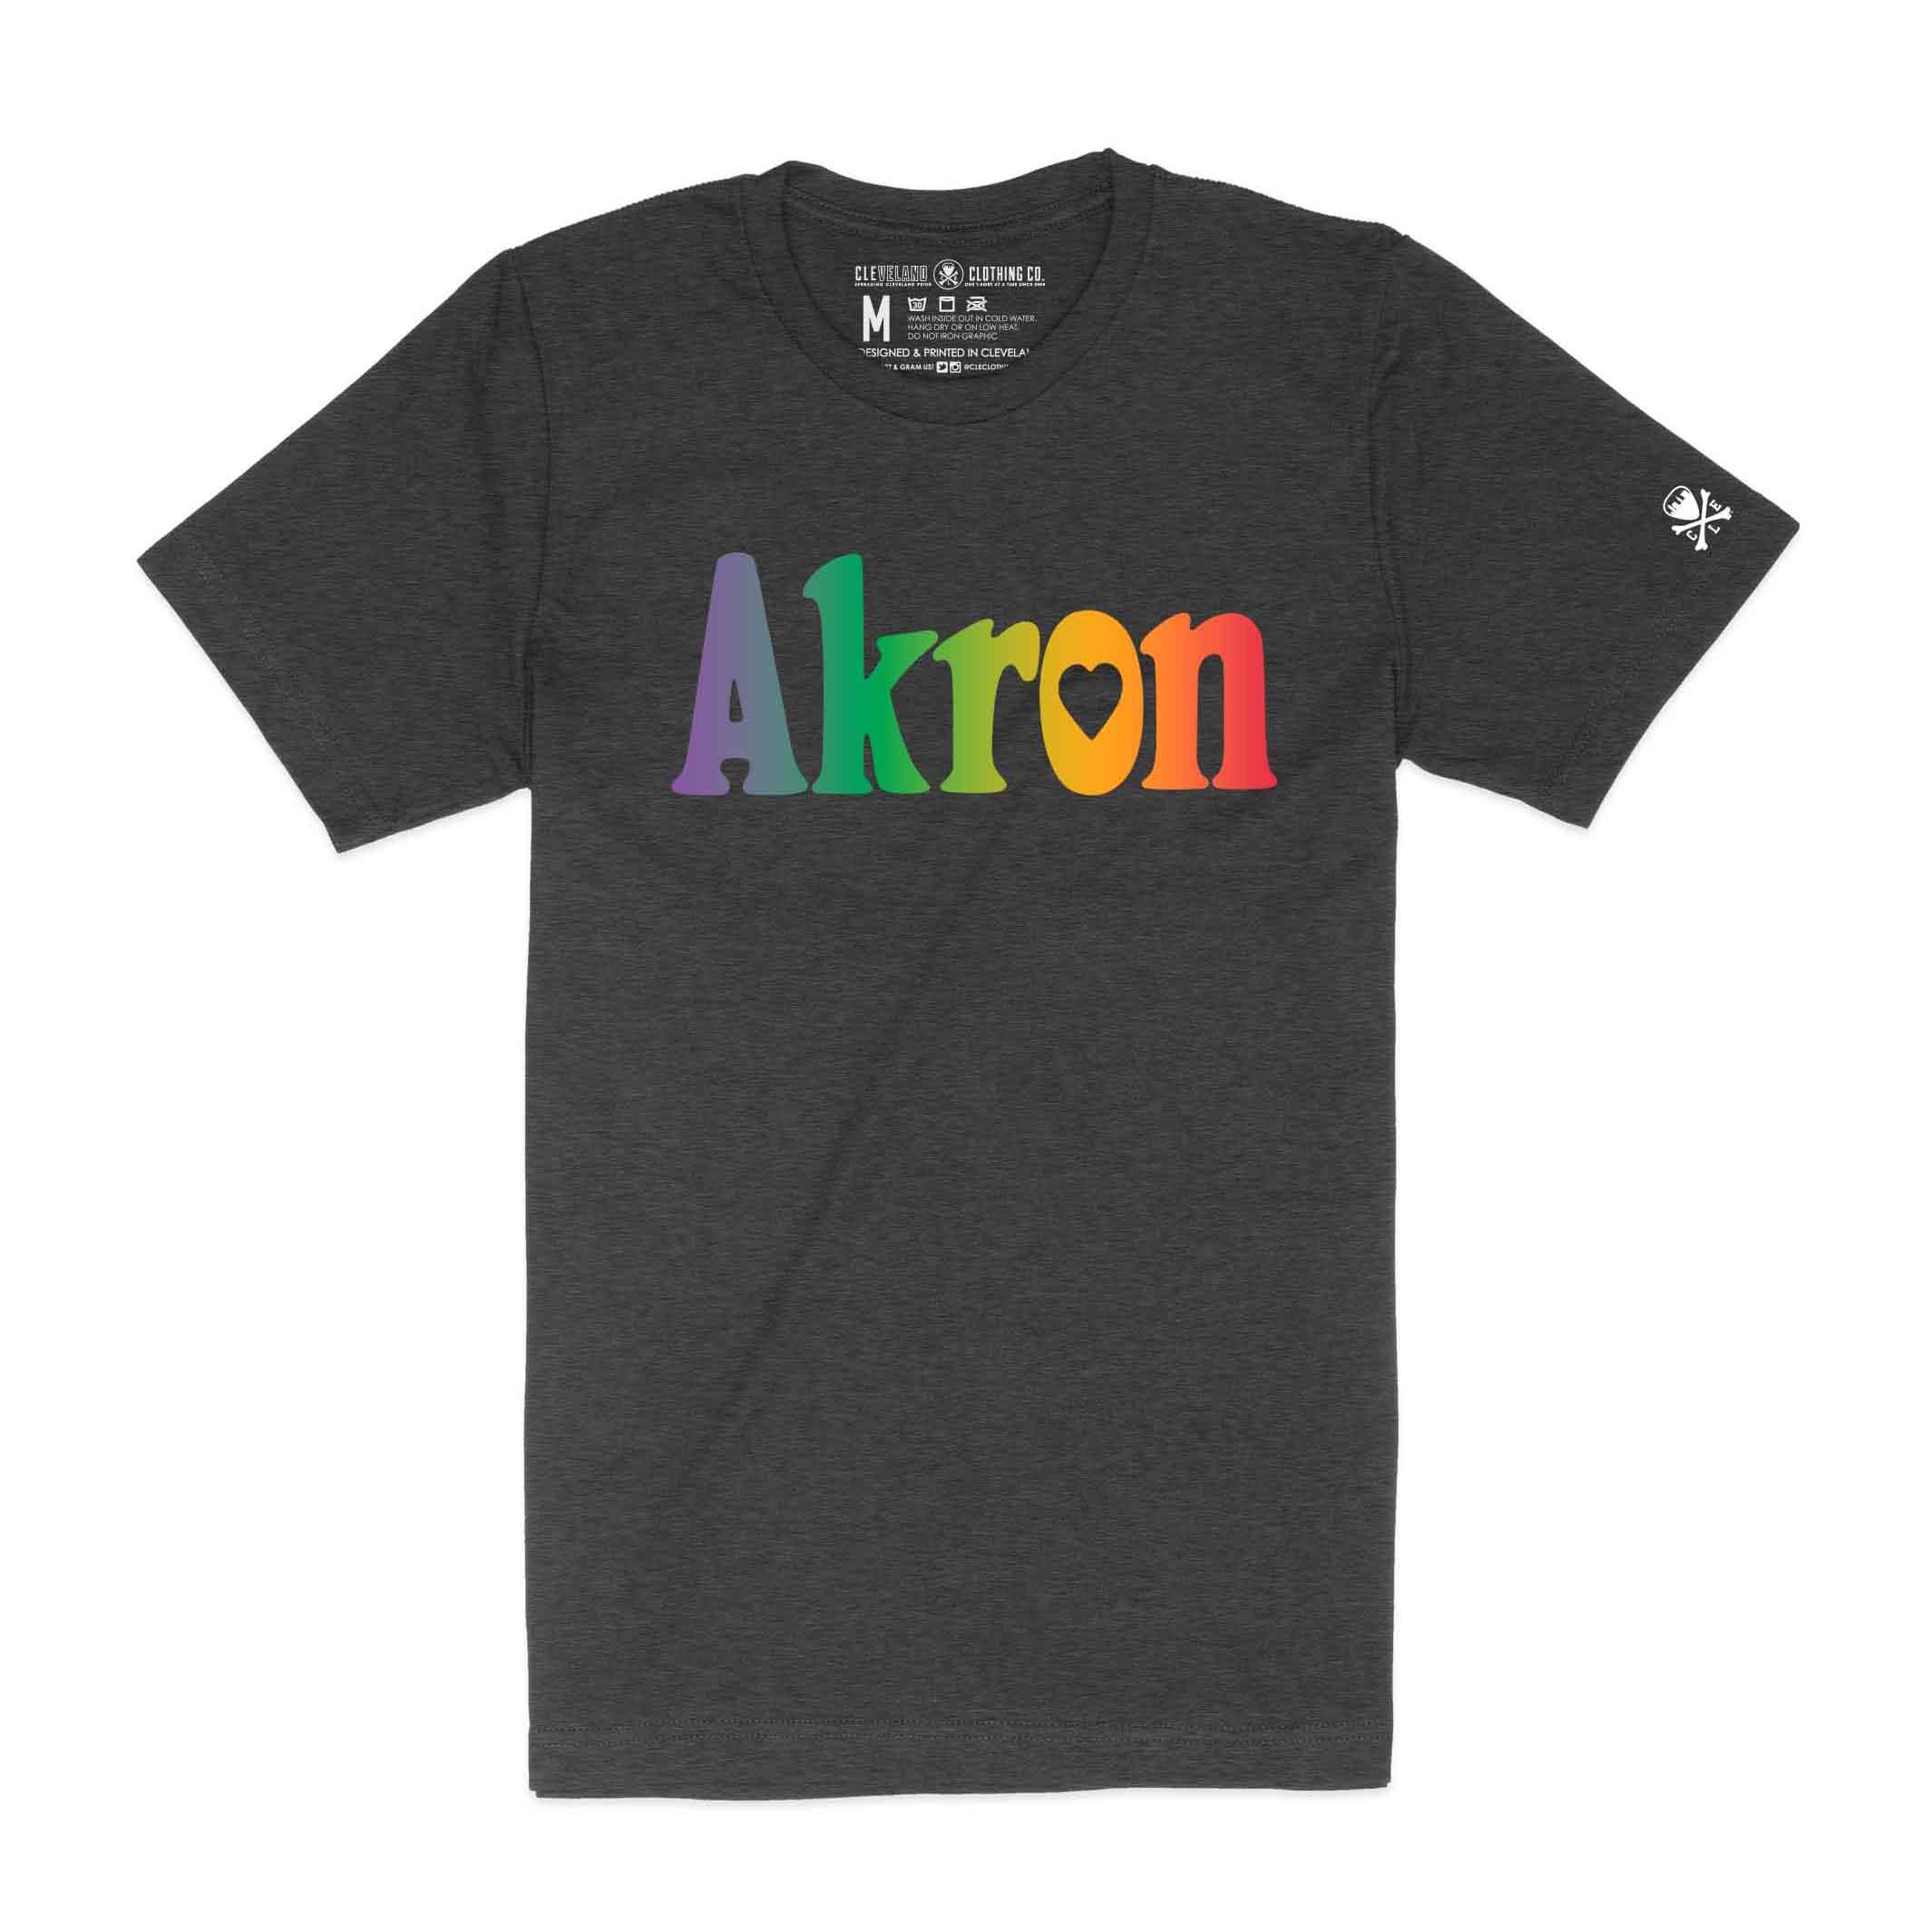 Shop Astro World Tshirt online